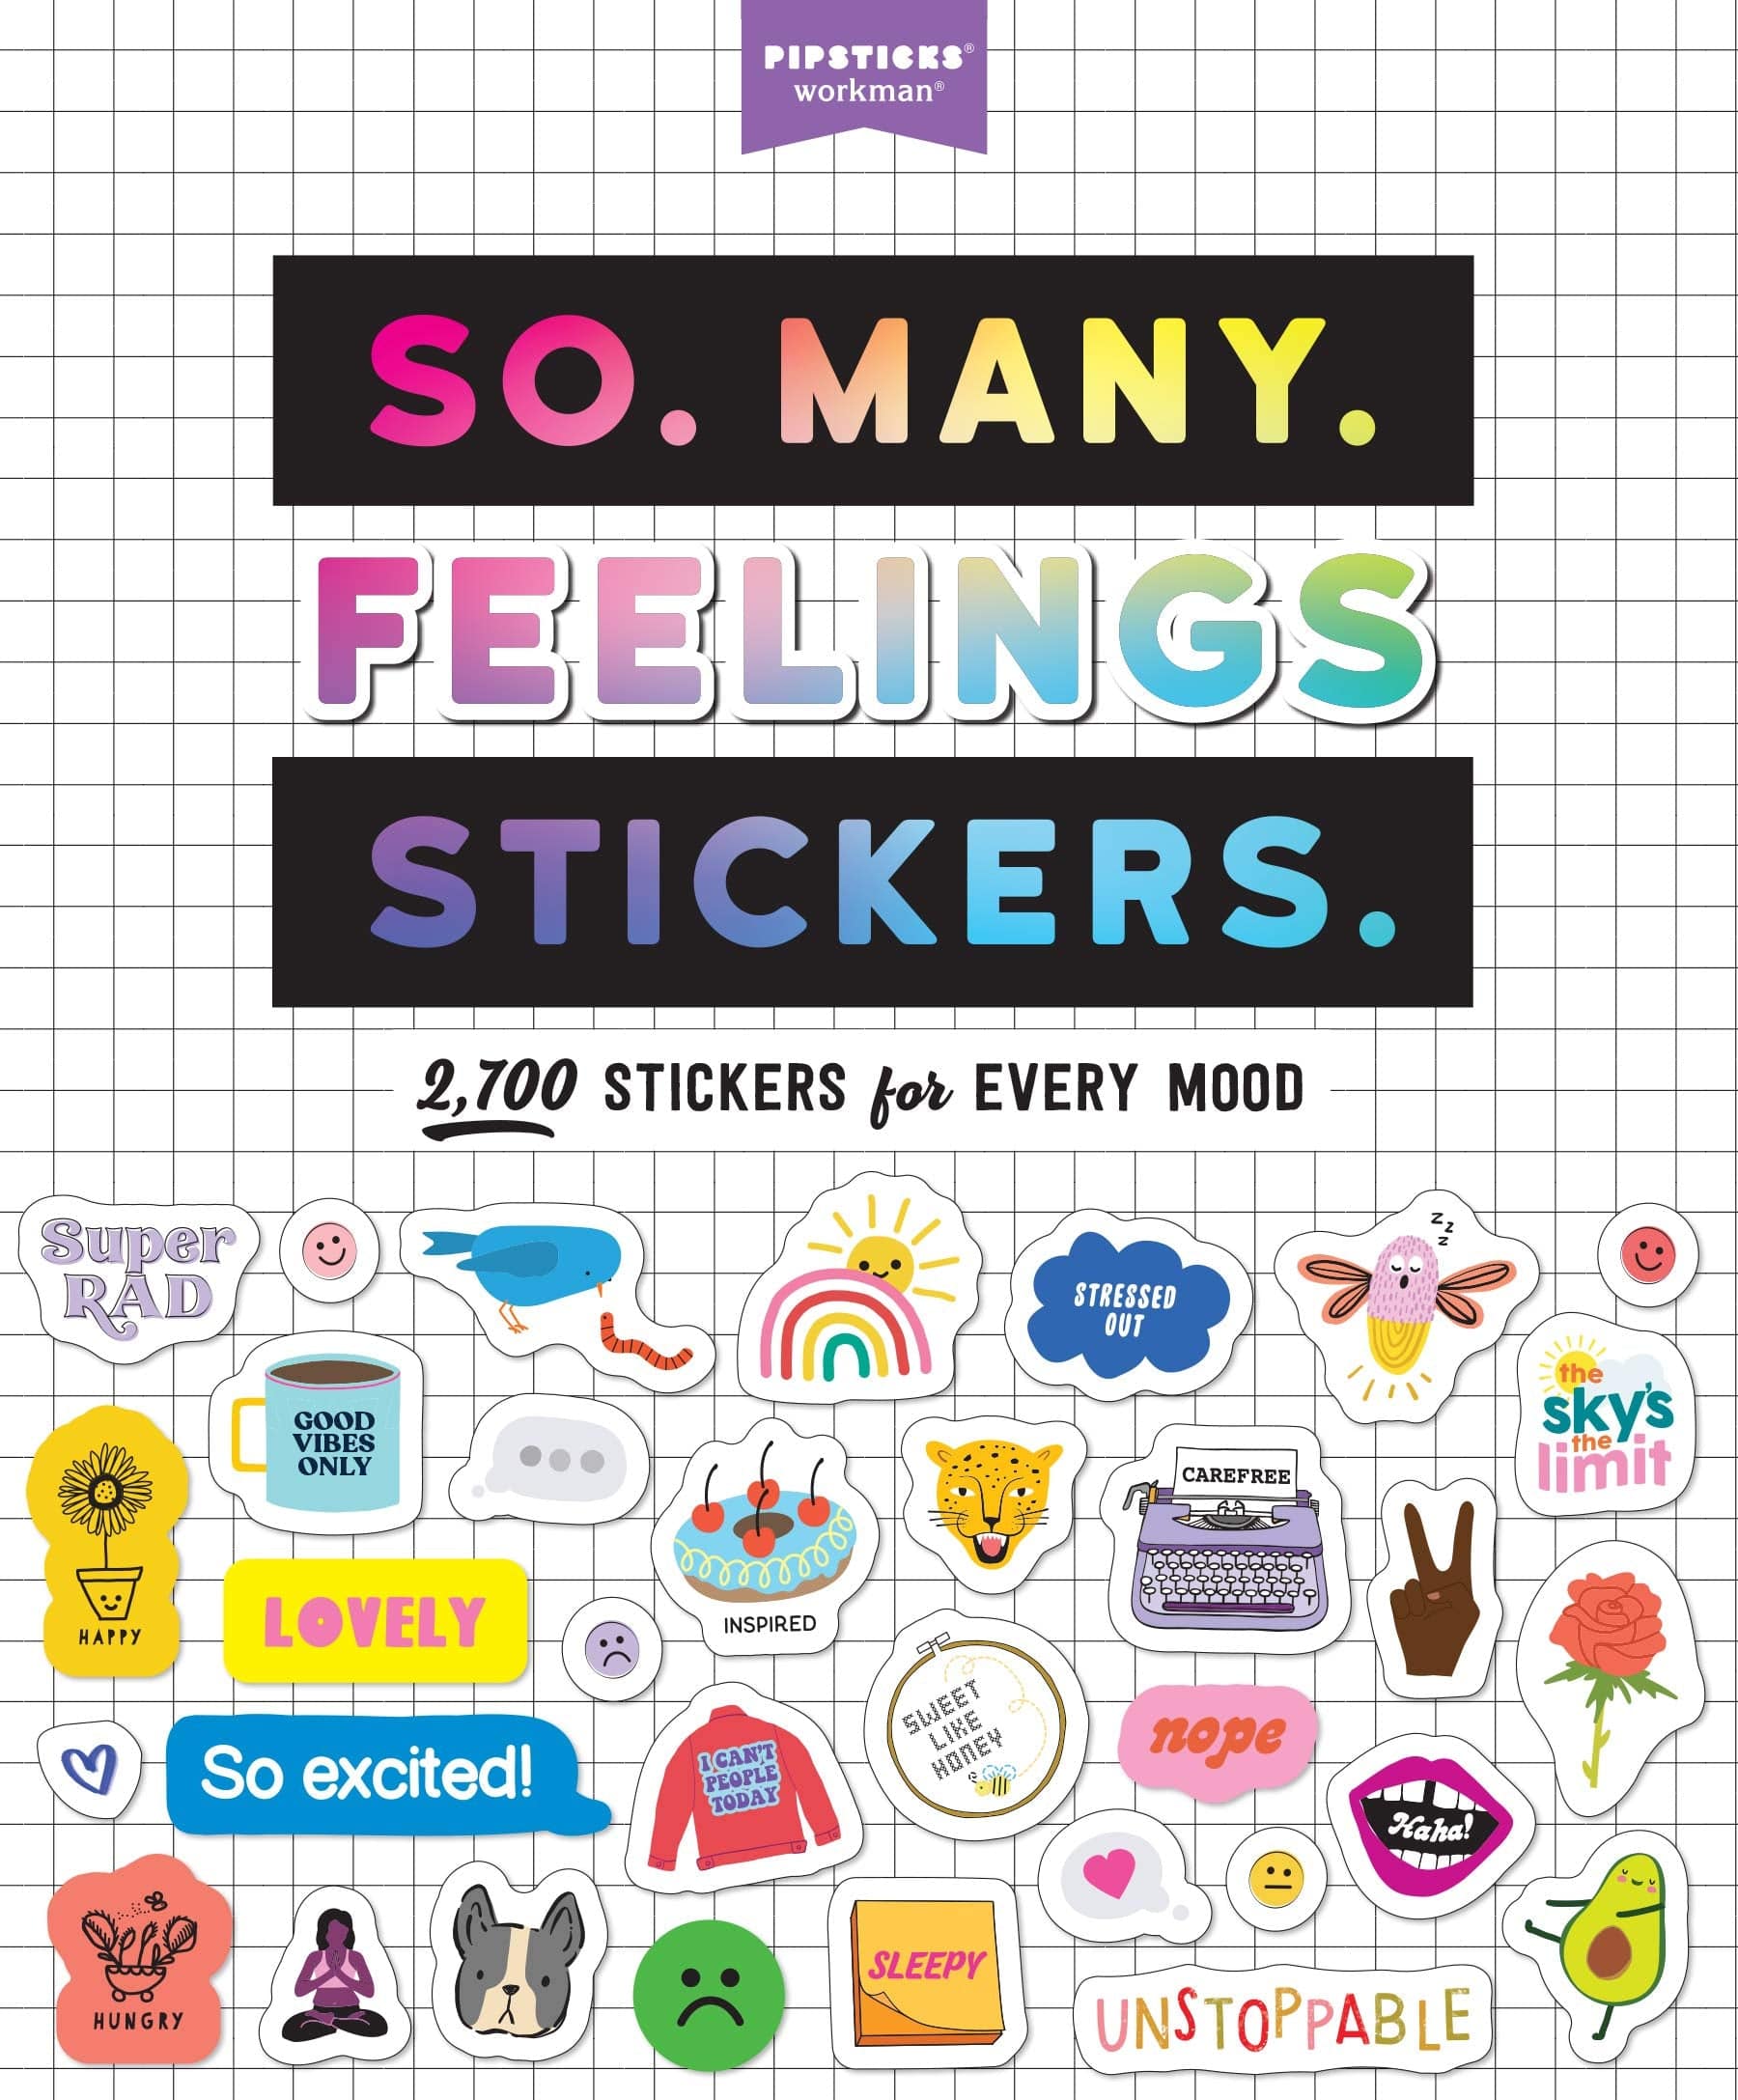 So. Many. Feelings Stickers. - Twinkle Twinkle Little One